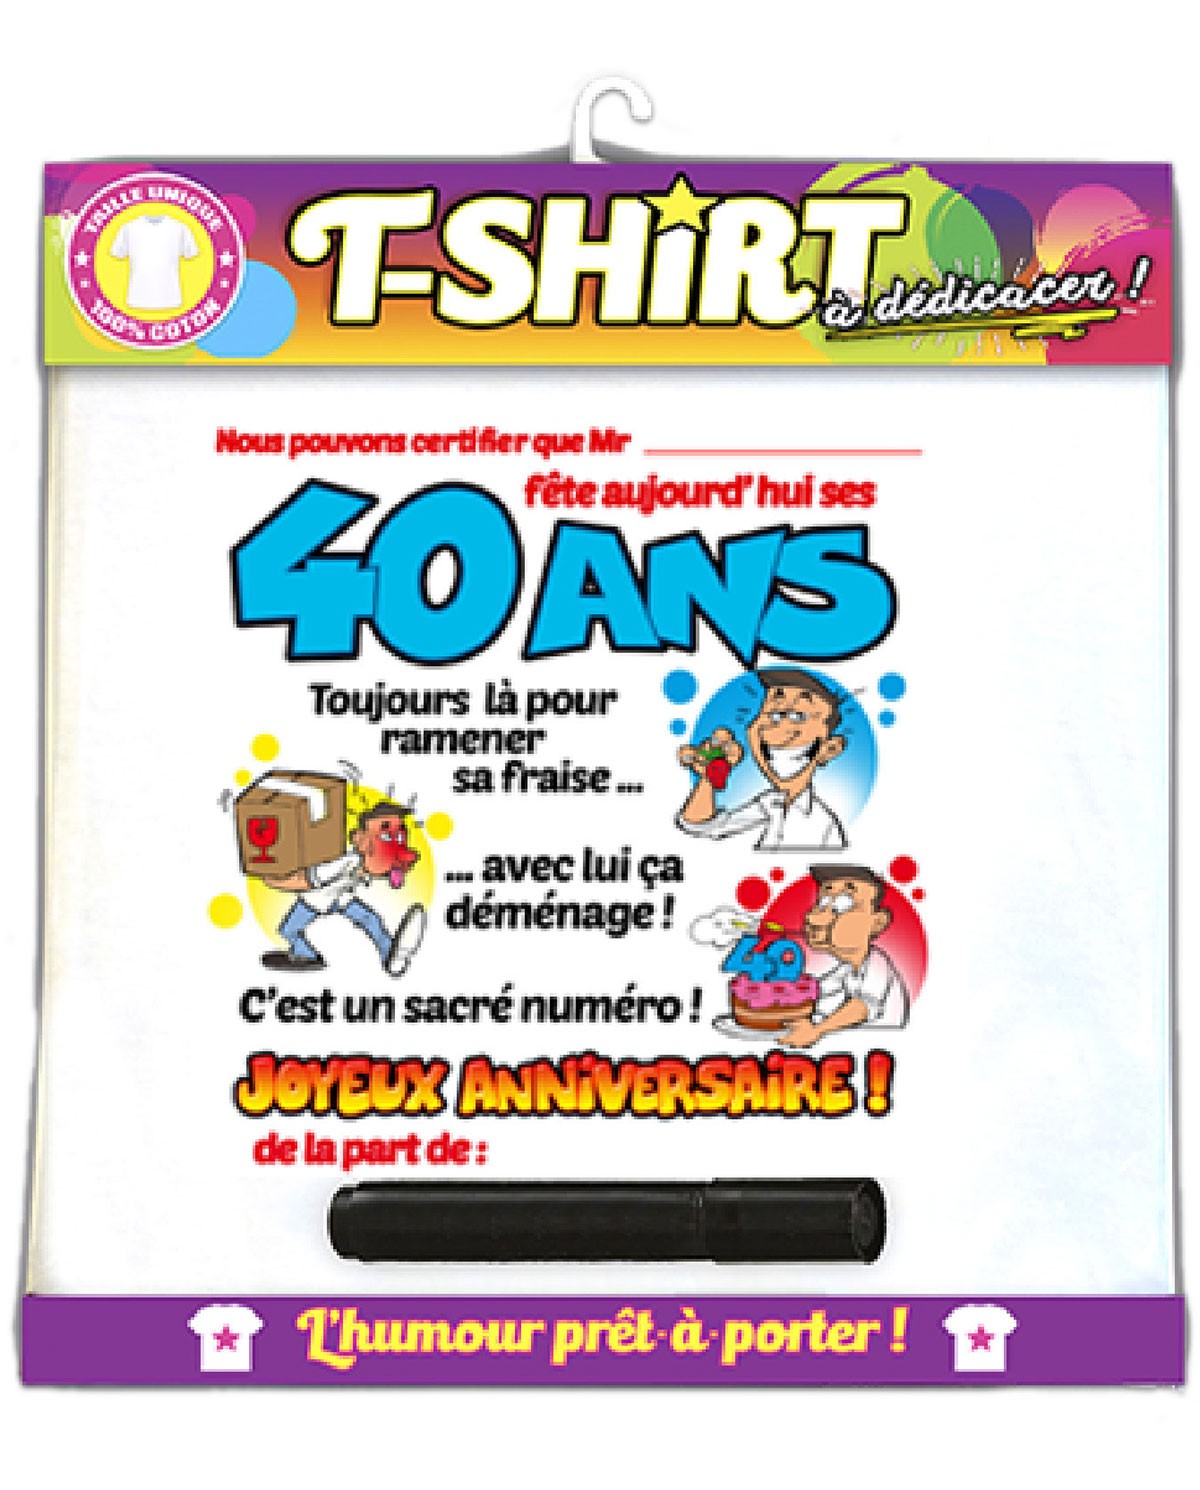 T-Shirt Femme Anniversaire 40 ans